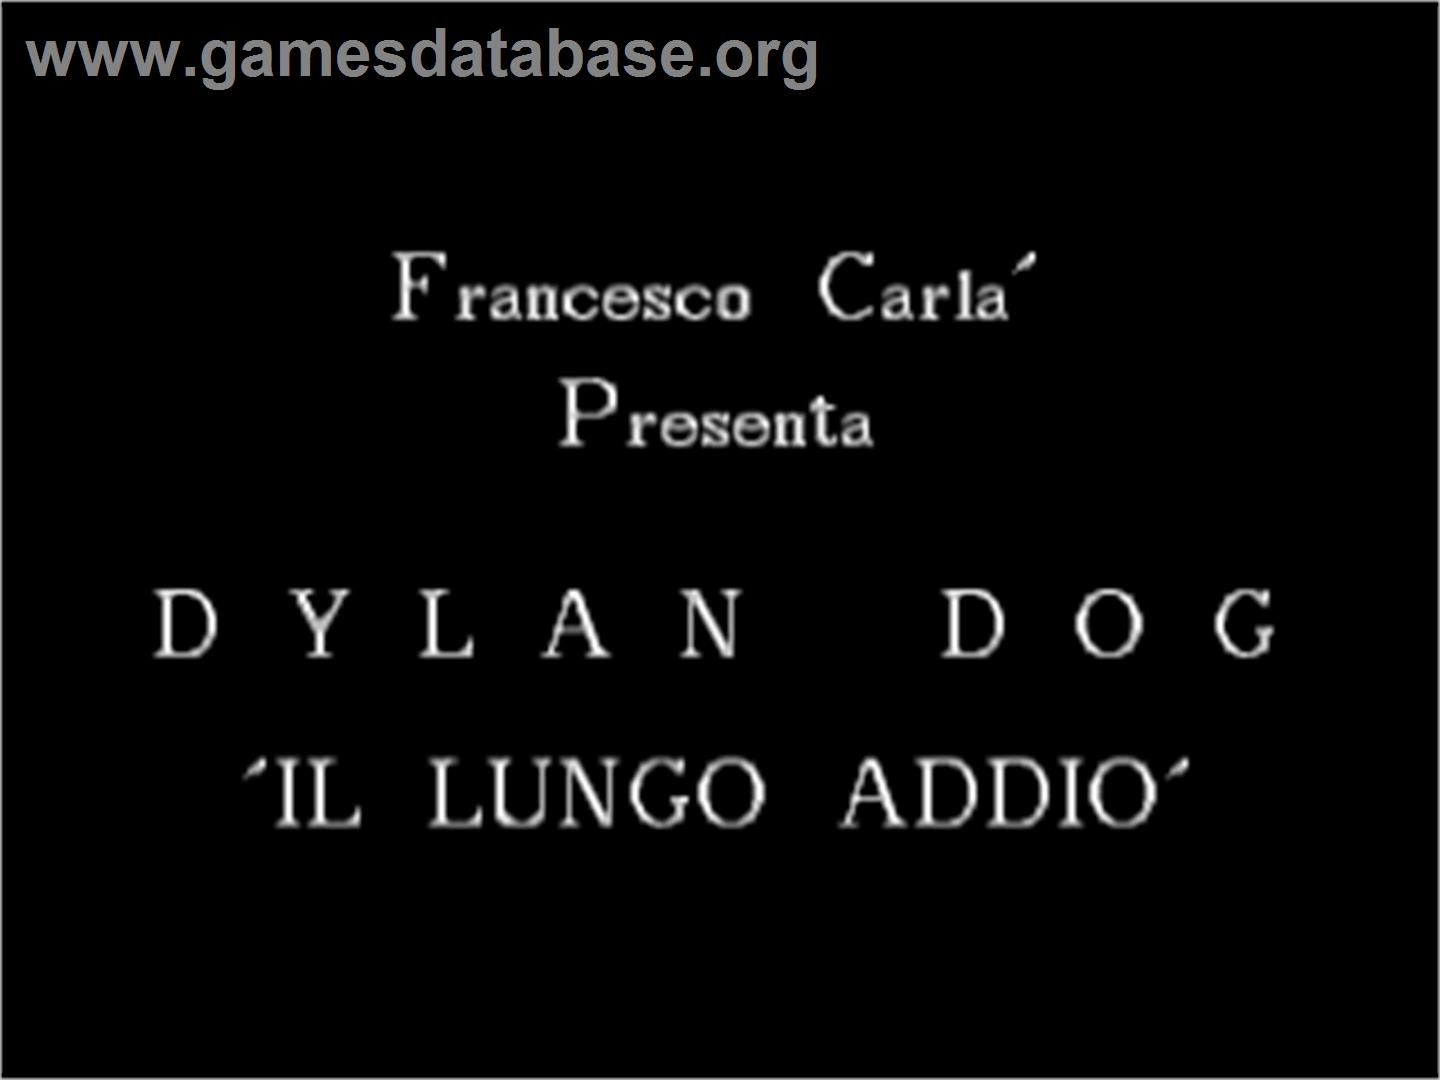 Dylan Dog: Gli Uccisori - Commodore Amiga - Artwork - Title Screen